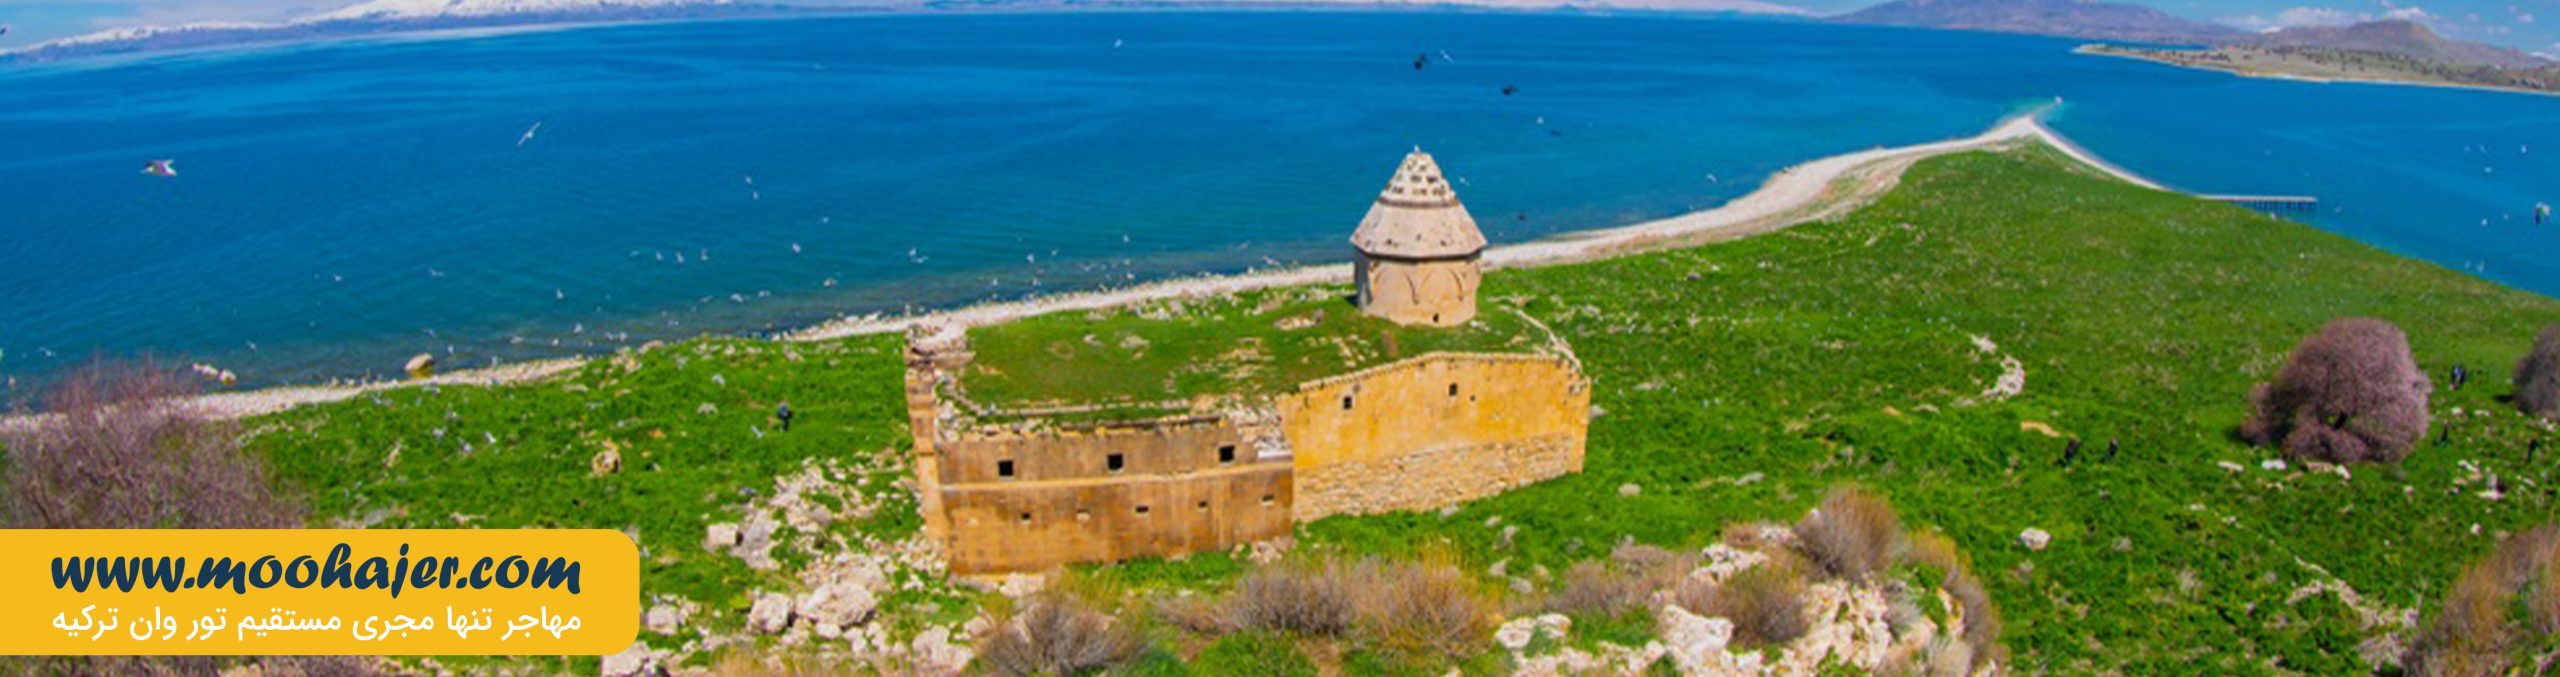 جزیره چارپاناک و صومعه کتوتس | جاذبه گردشگری شهر وان ترکیه | مهاجر سیر ایرانیان